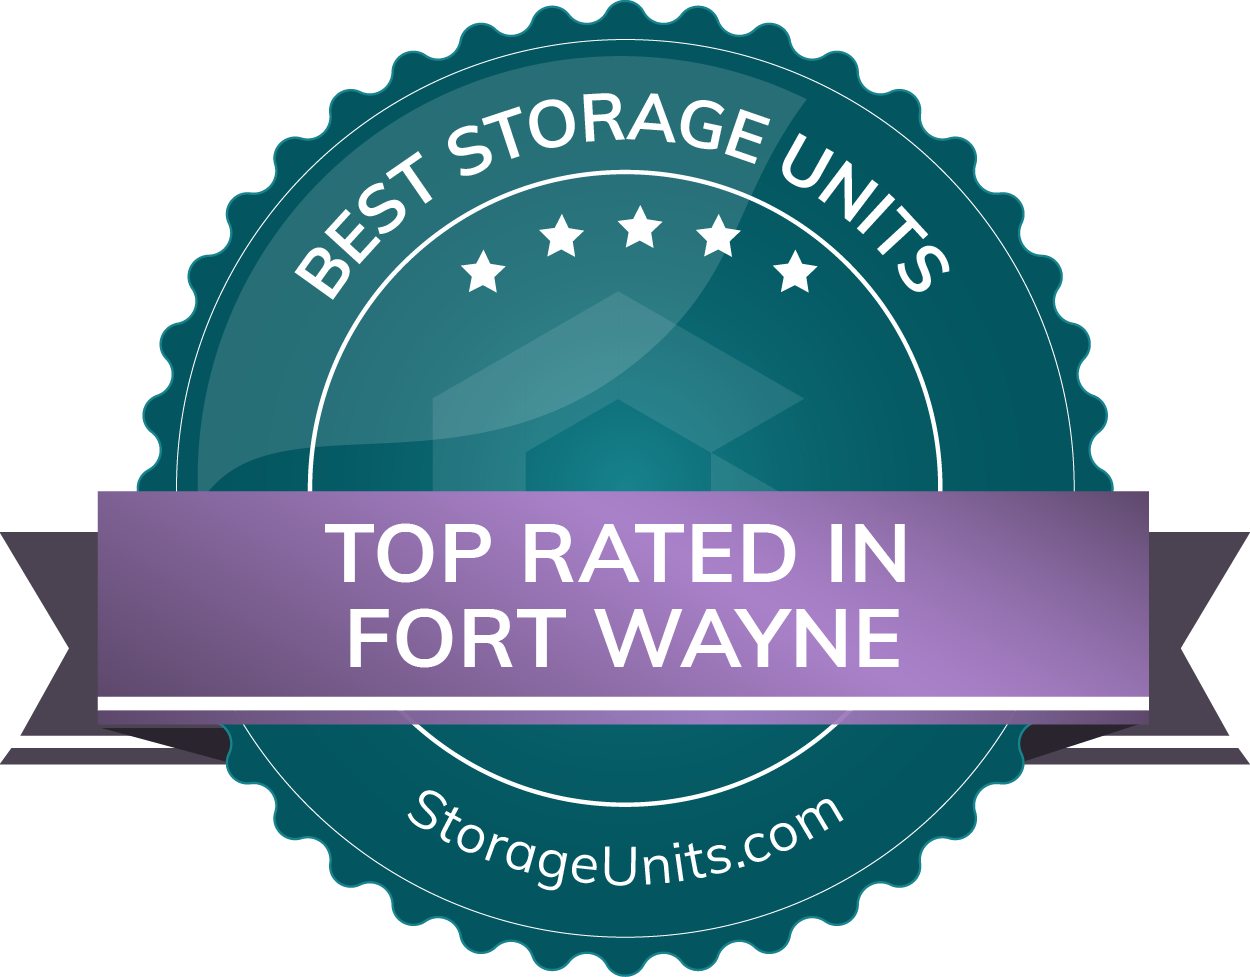 Best Self Storage Units in Fort Wayne IN of 2022